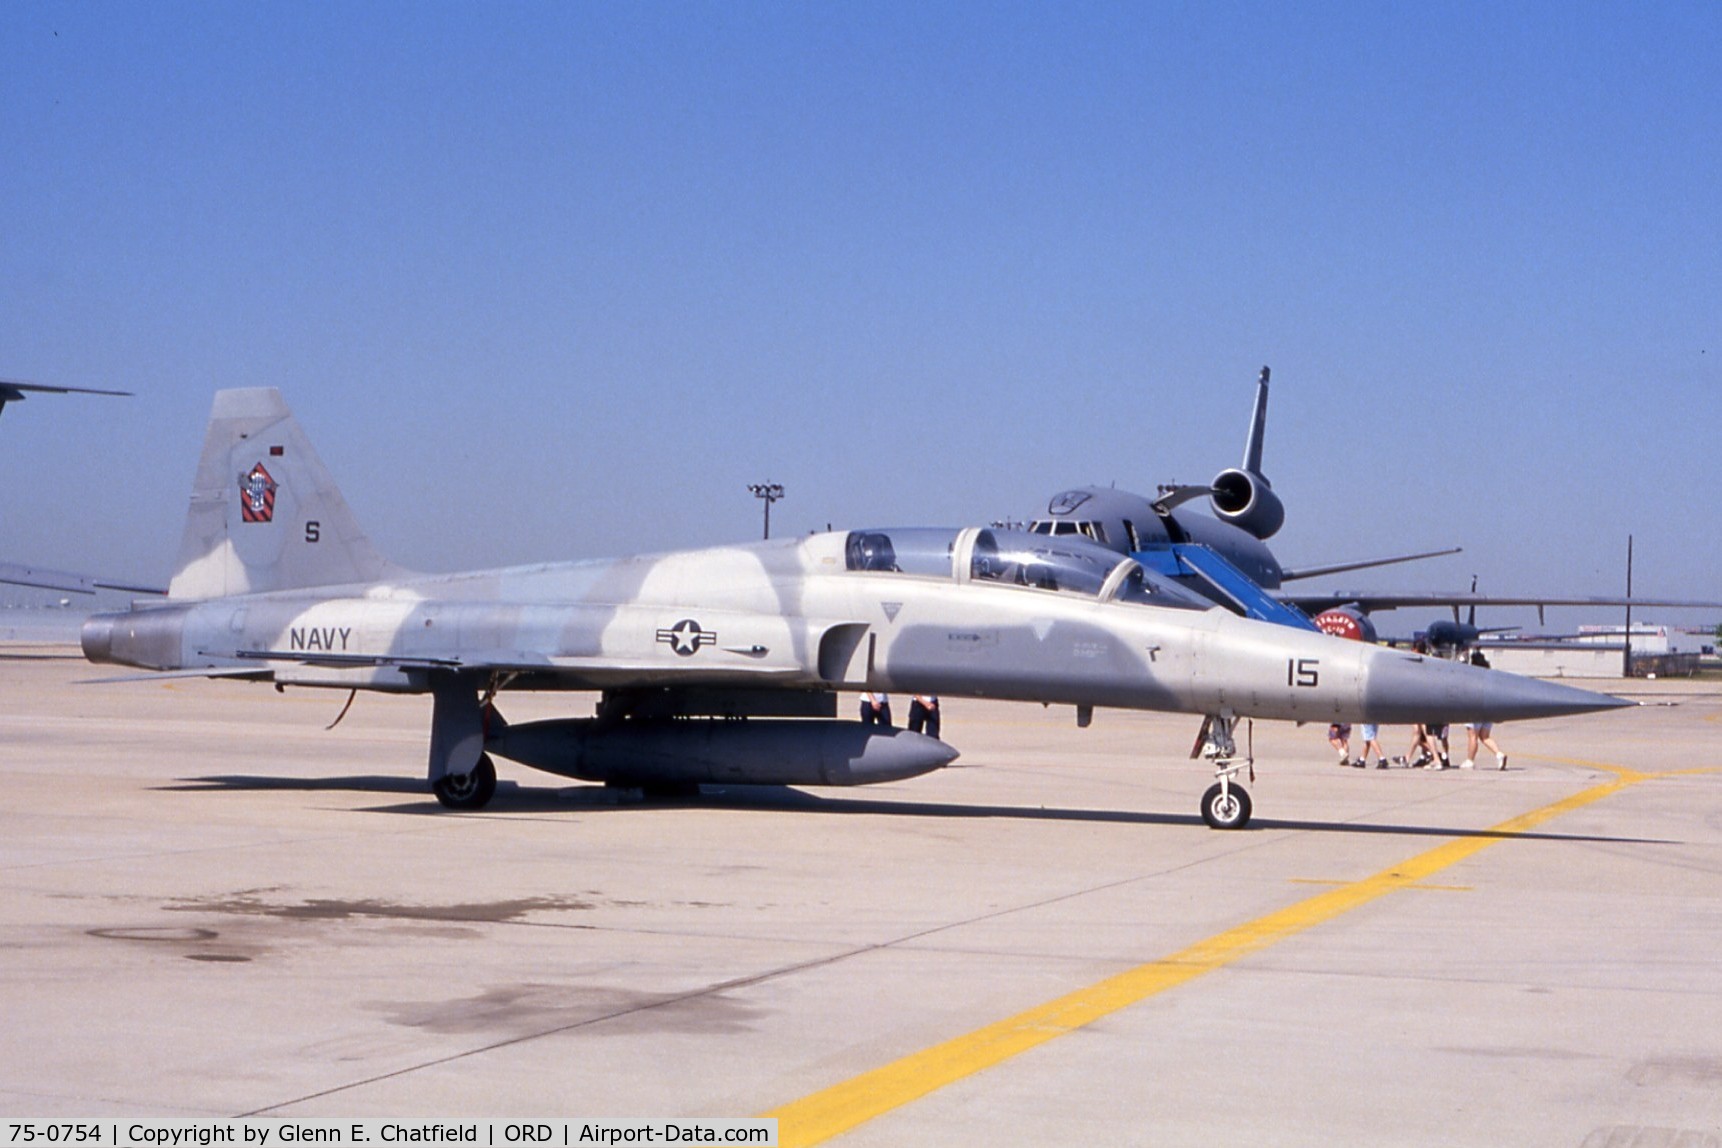 75-0754, 1975 Northrop F-5F Tiger II C/N W.1007, F-5F at the ANG/AFR open house.  Navy Bu.No. 160965